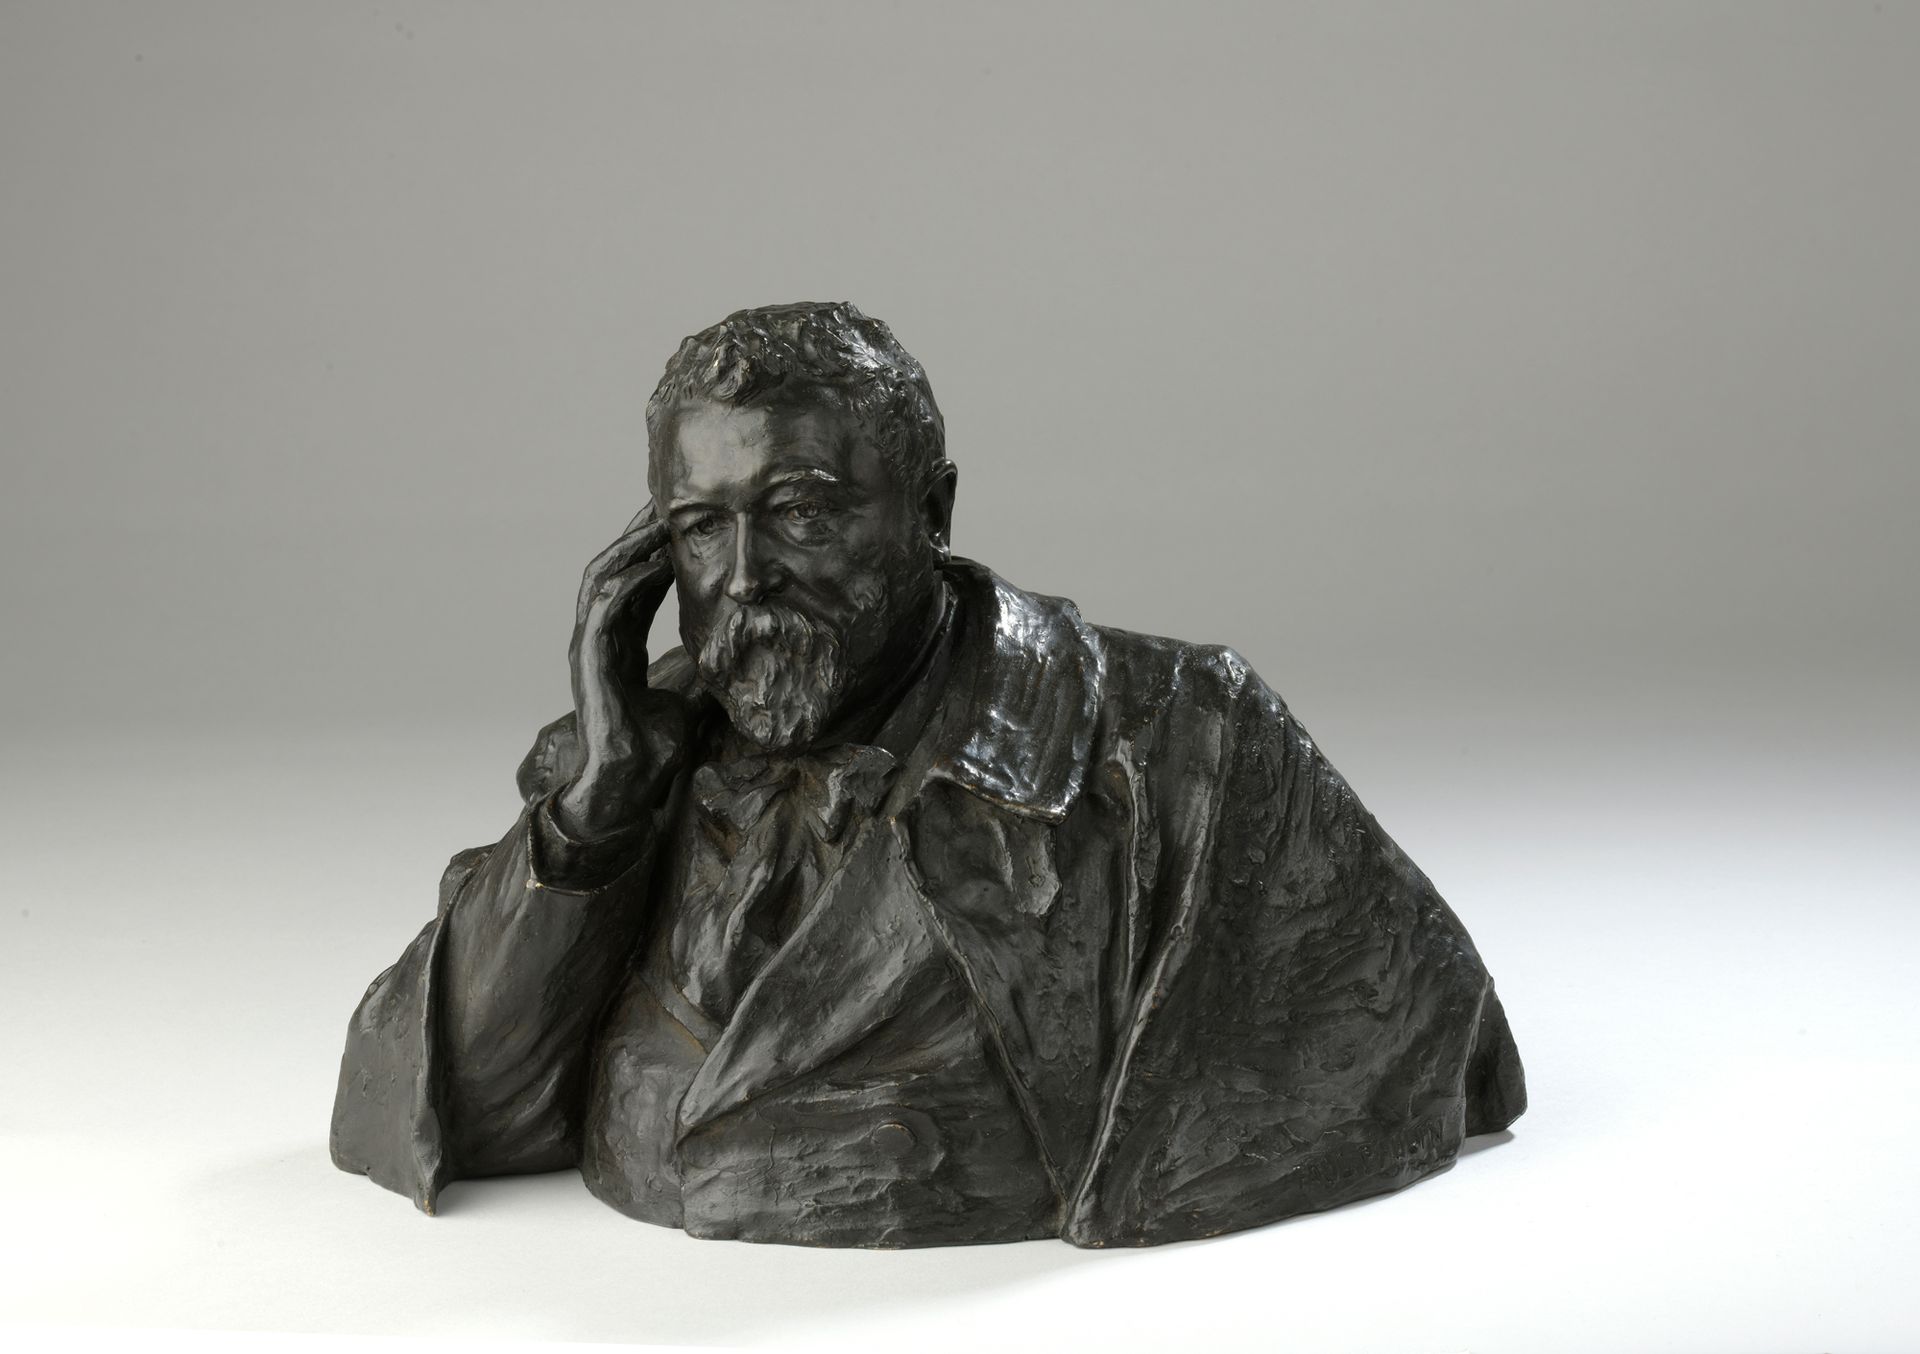 Null 保罗-鲍林 (1852-1937)

阿尔伯特-勒布格（1849-1928）

棕色铜质半身像的小生命

左肩有签名 "PAUL PAULIN"，有H&hellip;